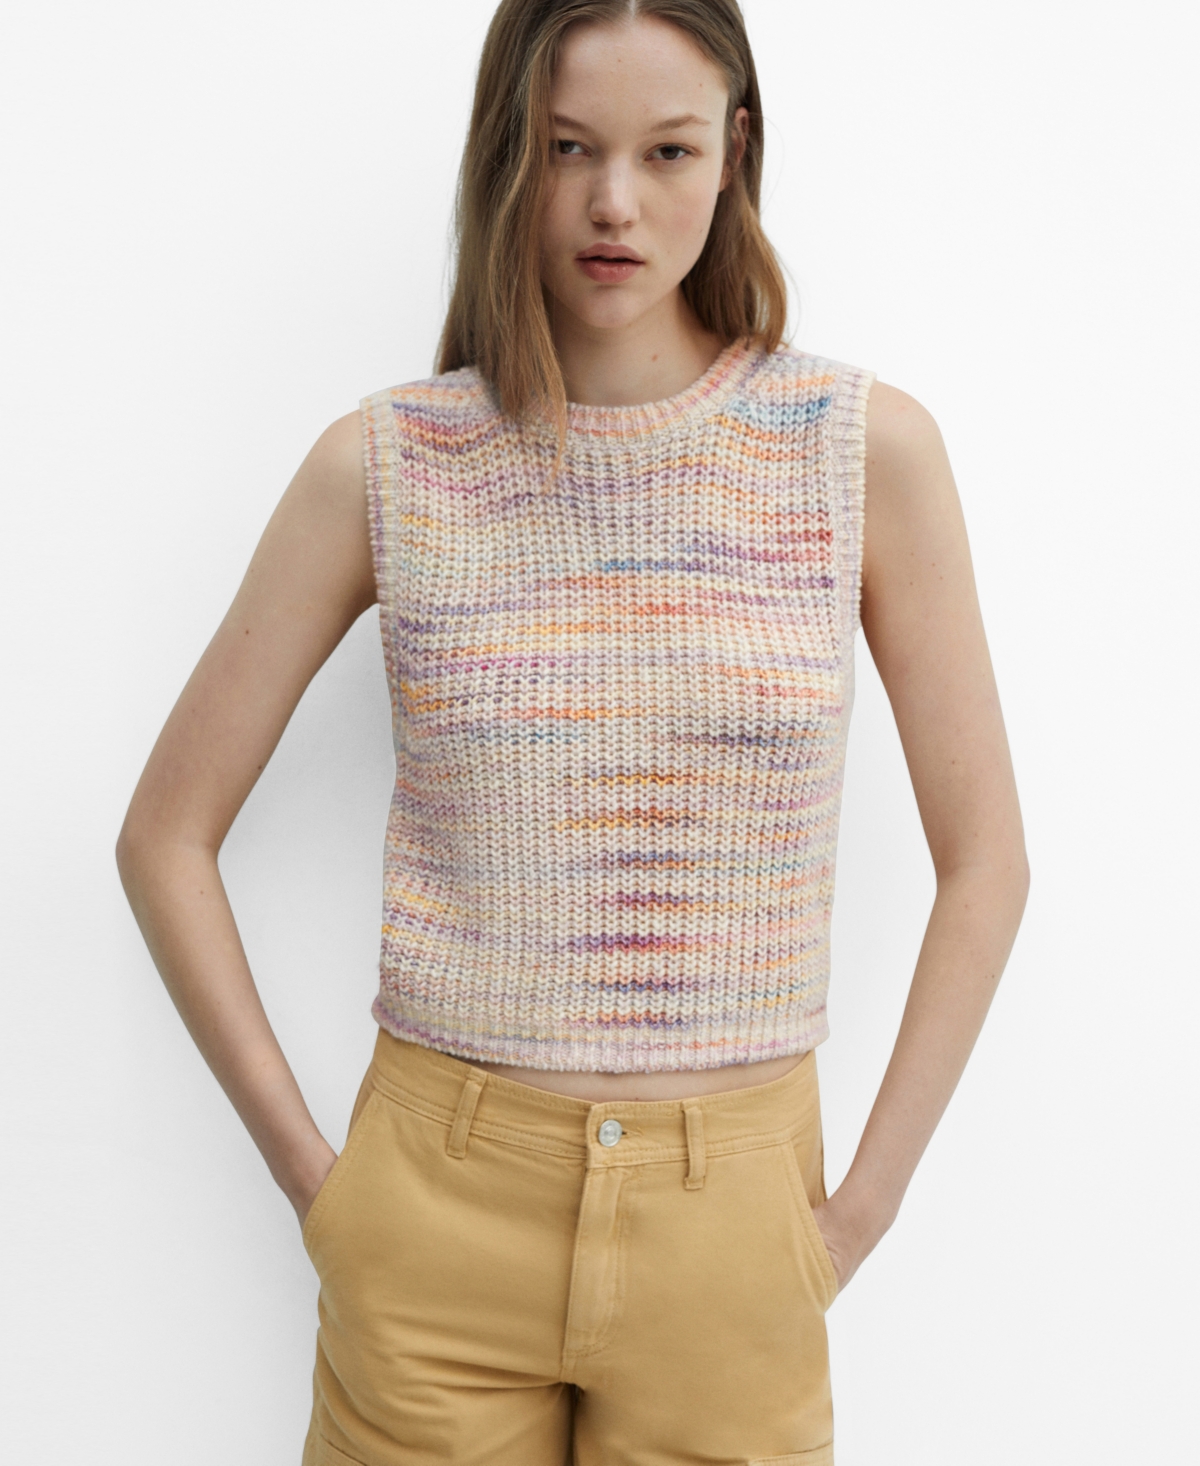 Women's Multi-Coloured Knitted Vest - Light Beige